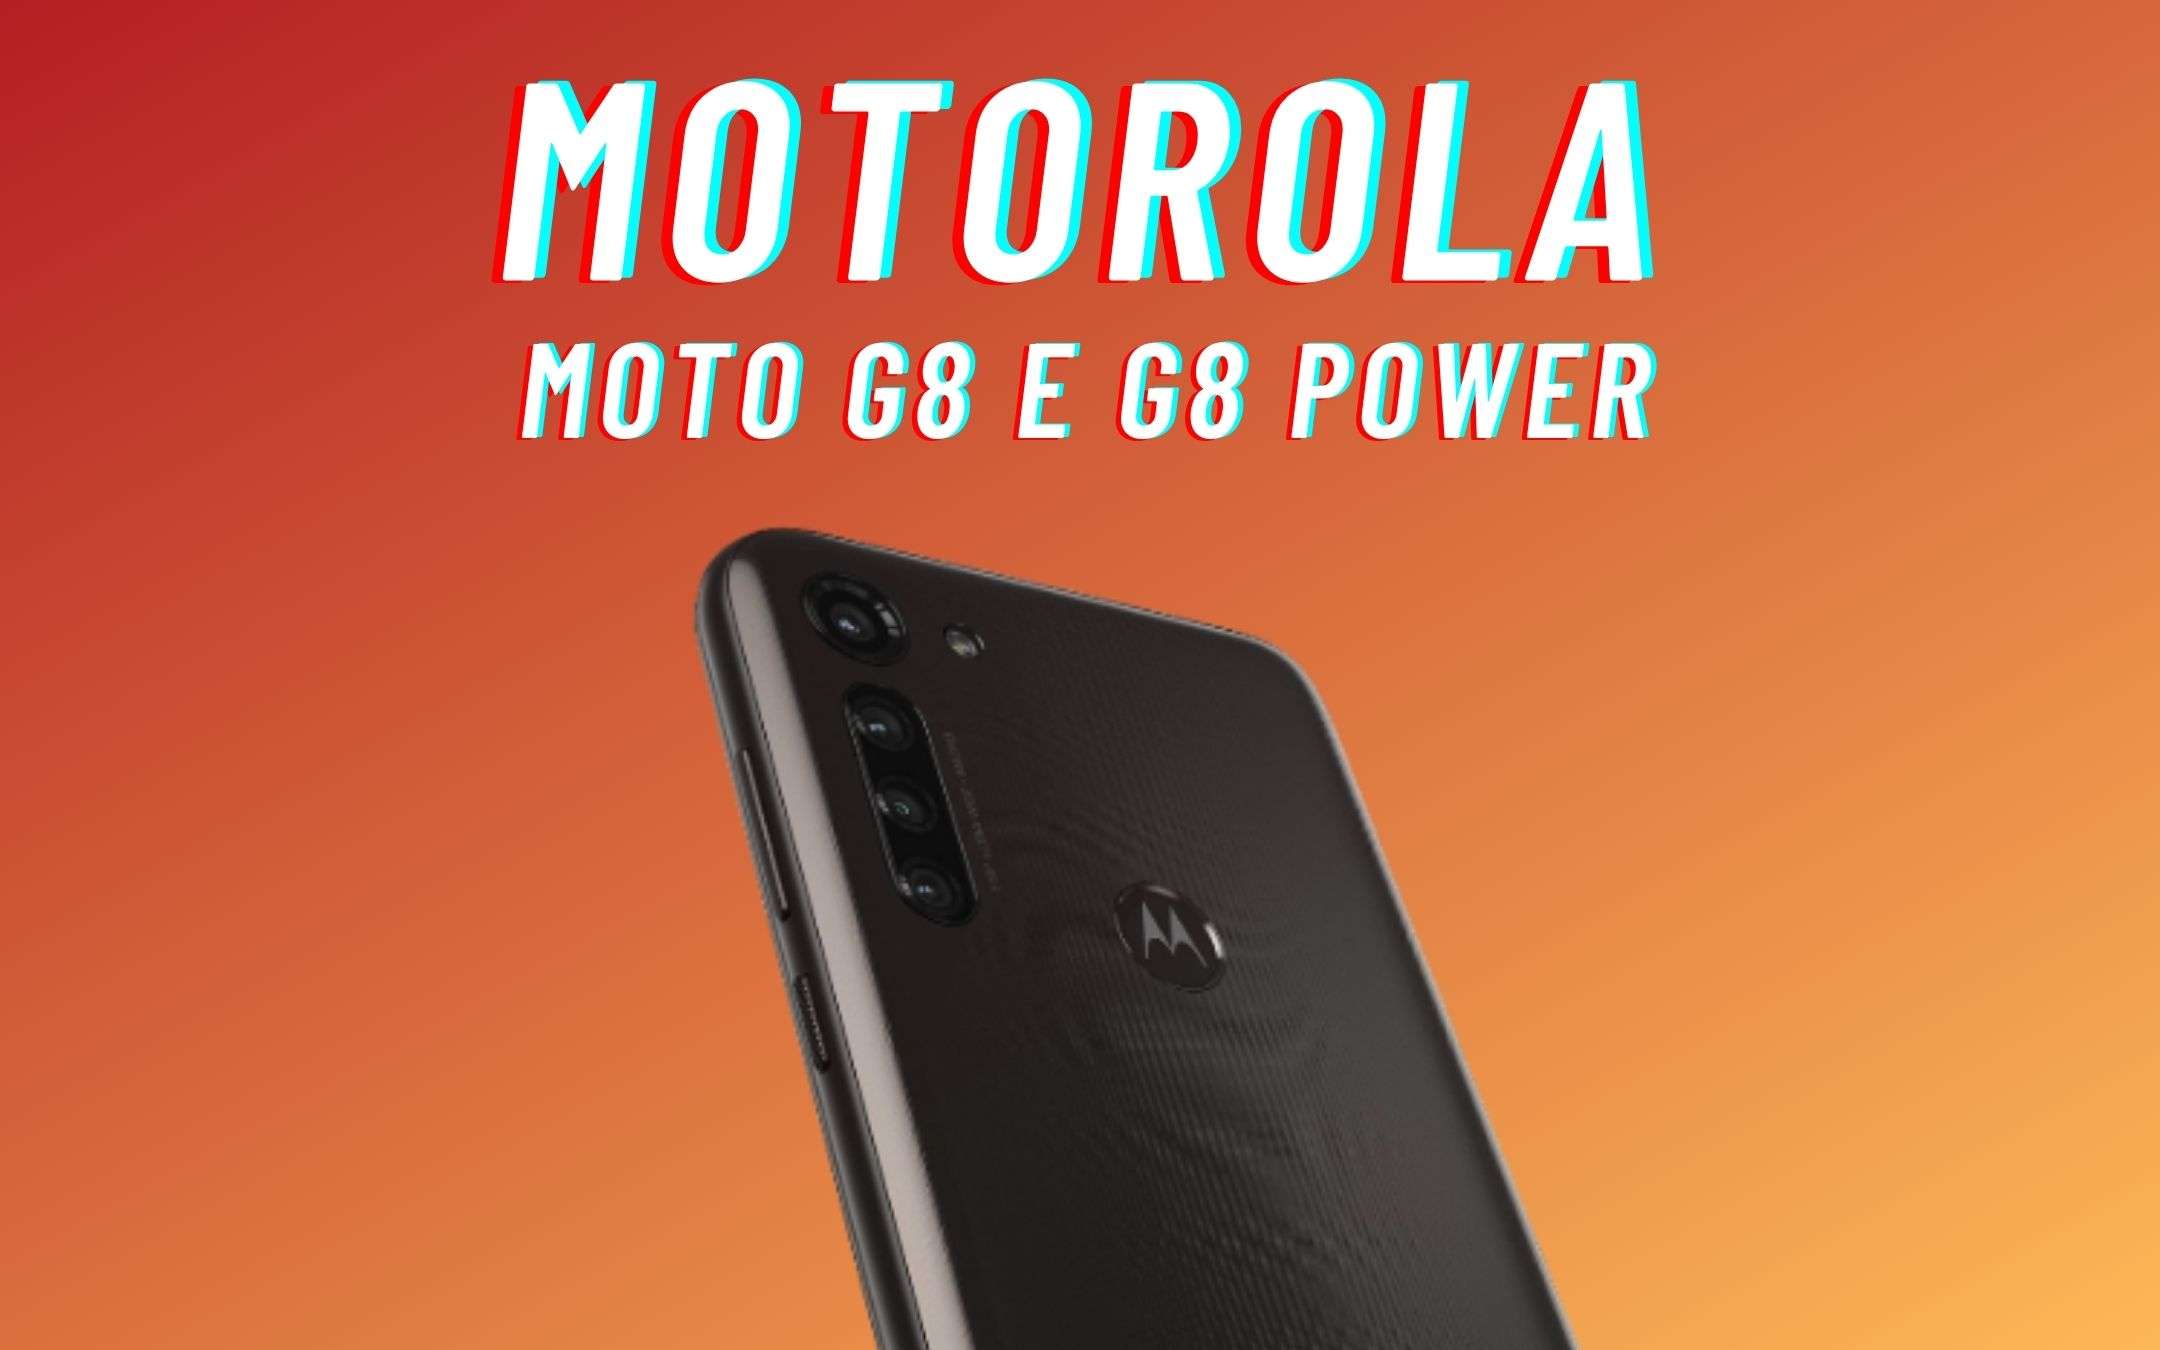 Aggiornate subito i vostri Motorola G8 e G8 Power!